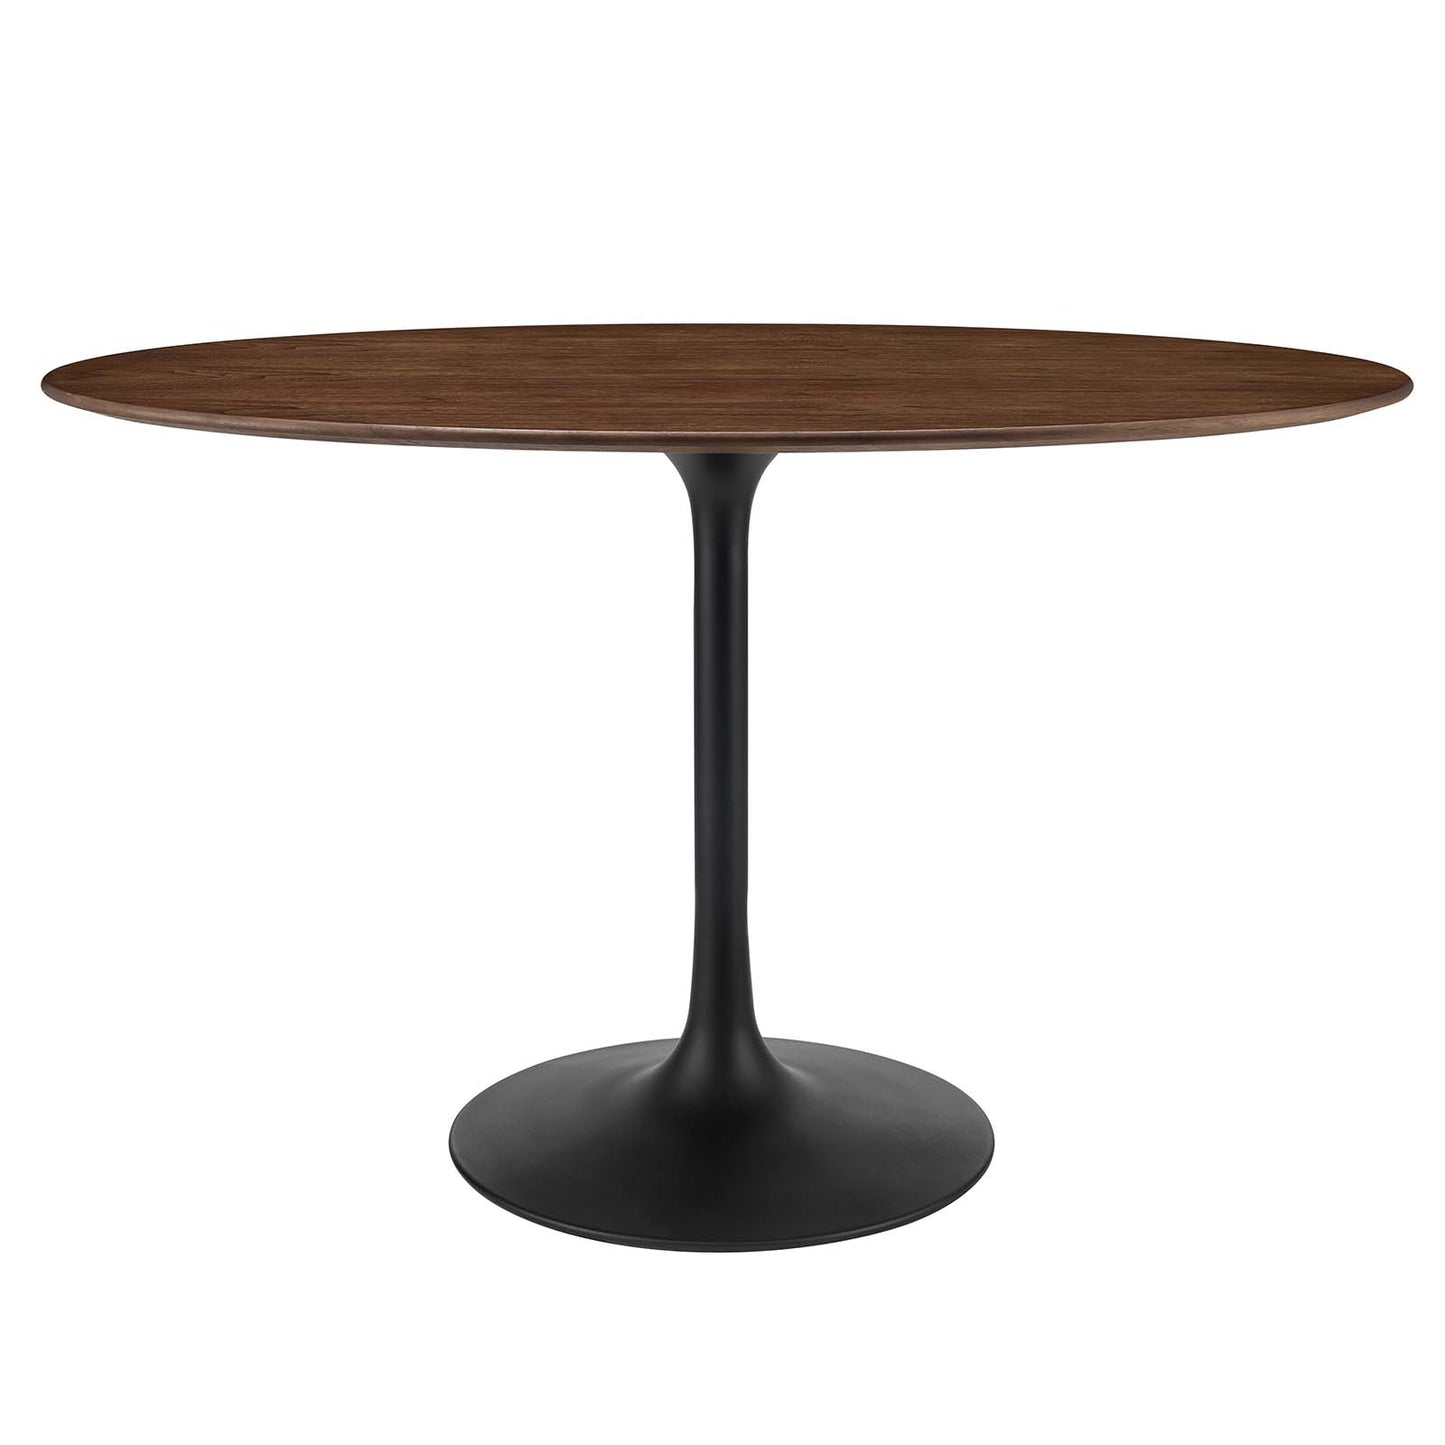 Modway Lippa 48" Oval Walnut Dining Table - EEI-3520